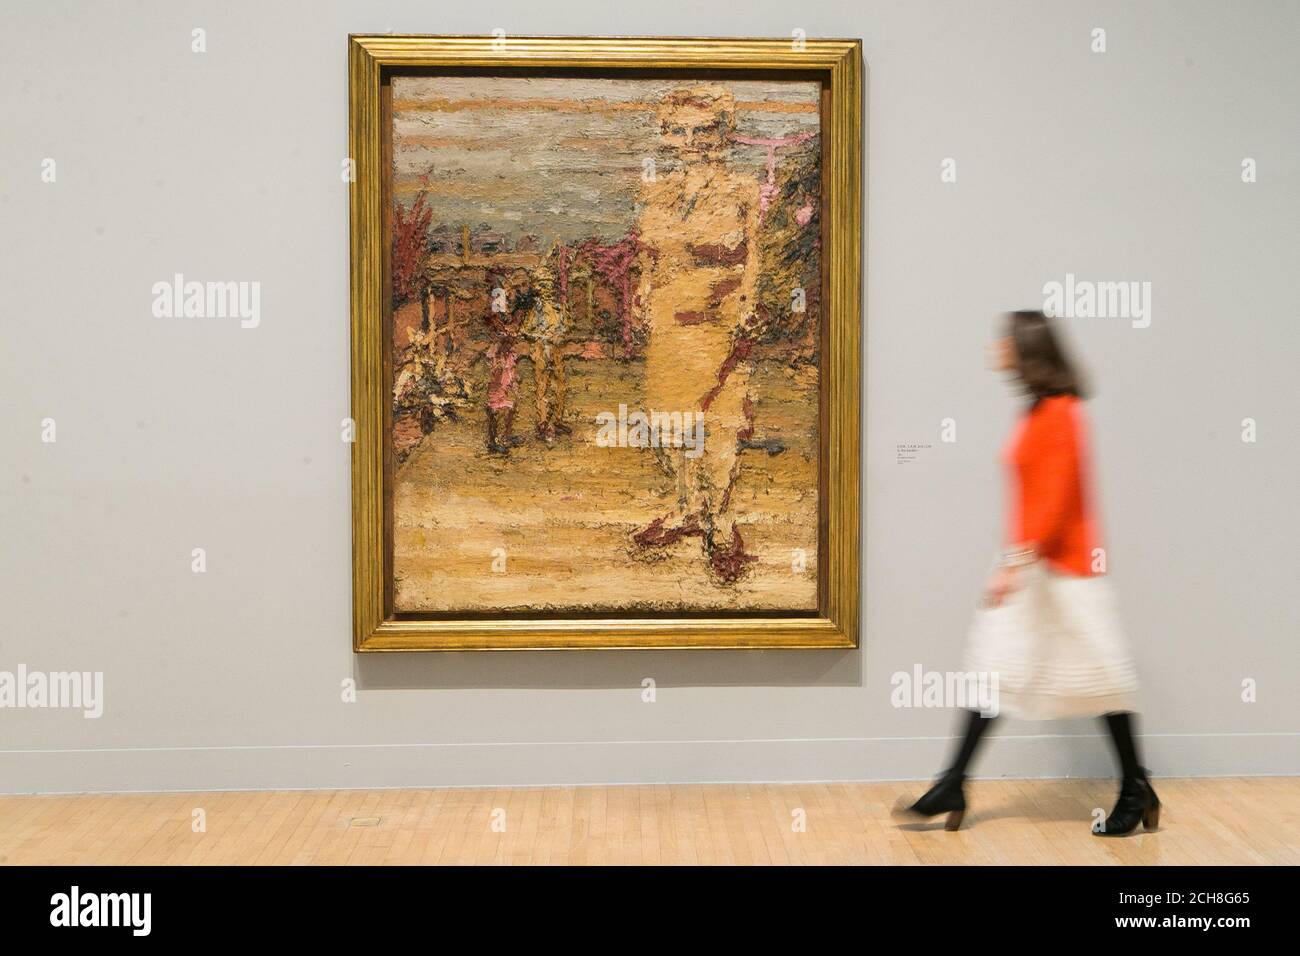 Ein Galerist betrachtet ein Gemälde von Frank Auerbach mit dem Titel 'E.O.W., S.A.W, and J.J.W. in the Garden I', 1963, auf einer Fotoausstellung für eine neue Ausstellung des britischen Künstlers in der Tate Britain in London. Stockfoto